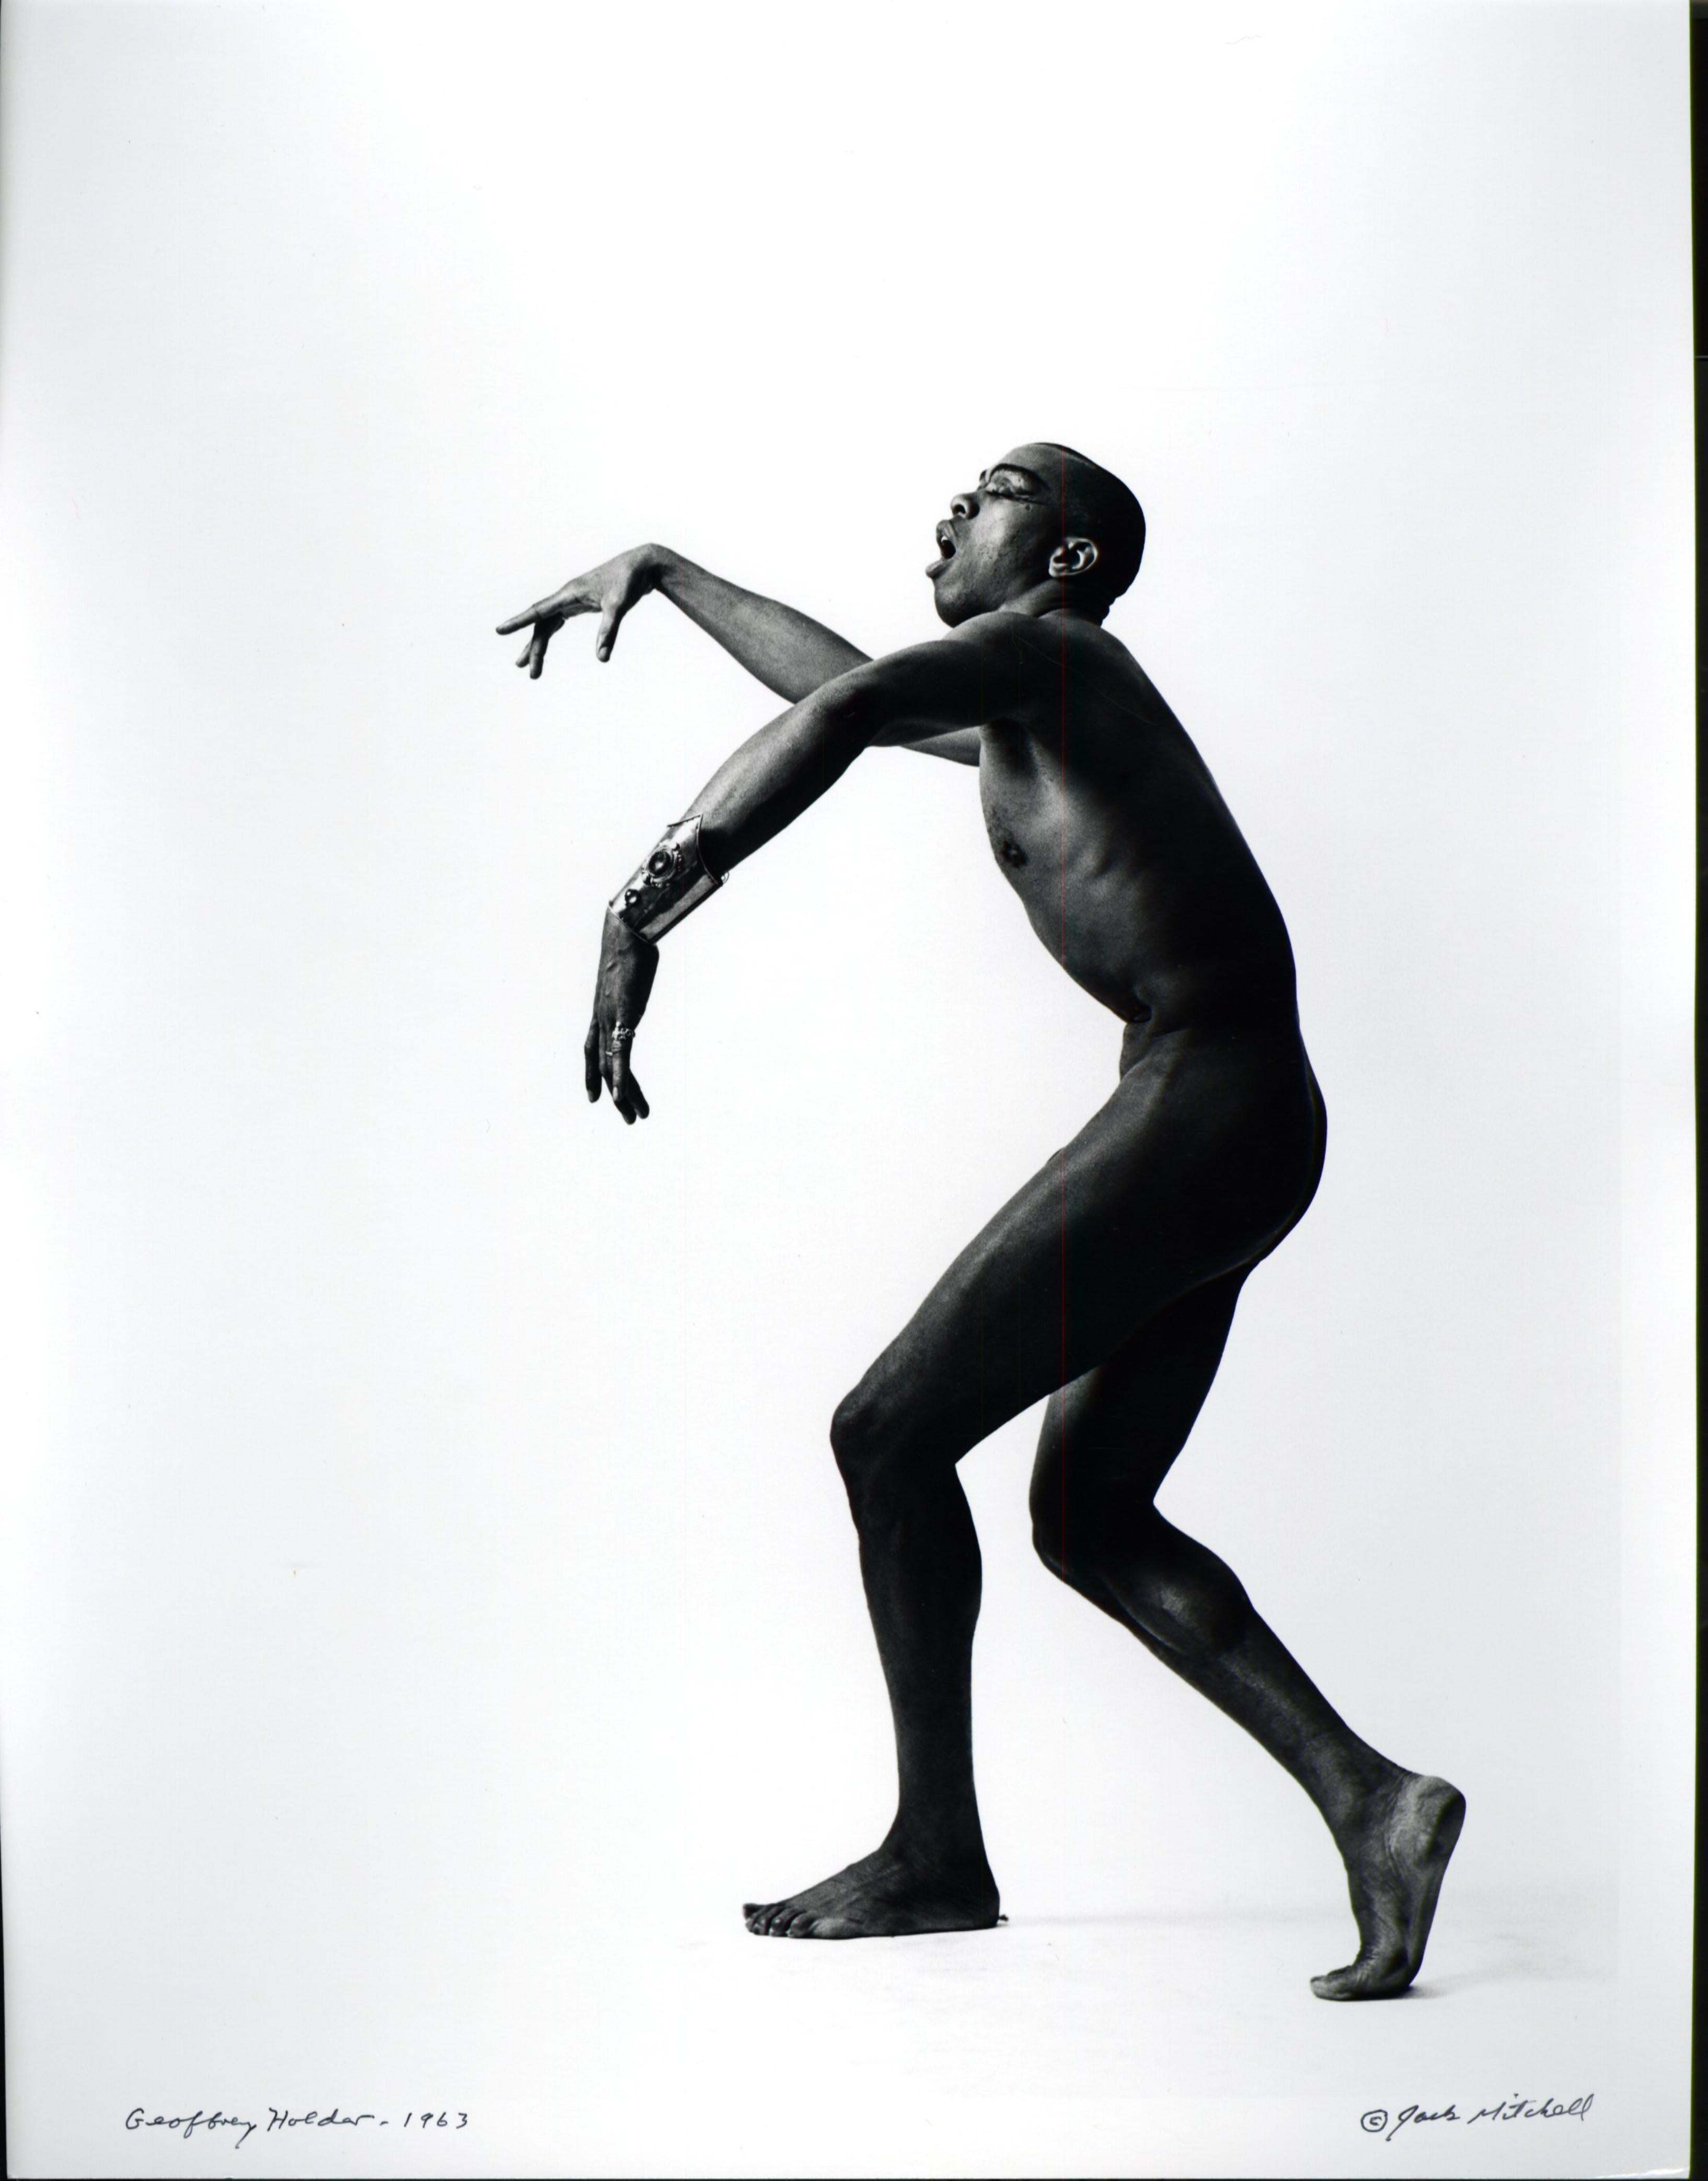 Black and White Photograph Jack Mitchell - Portrait nu de la danseuse / acteur / chorégraphe Geoffrey Holder, signé